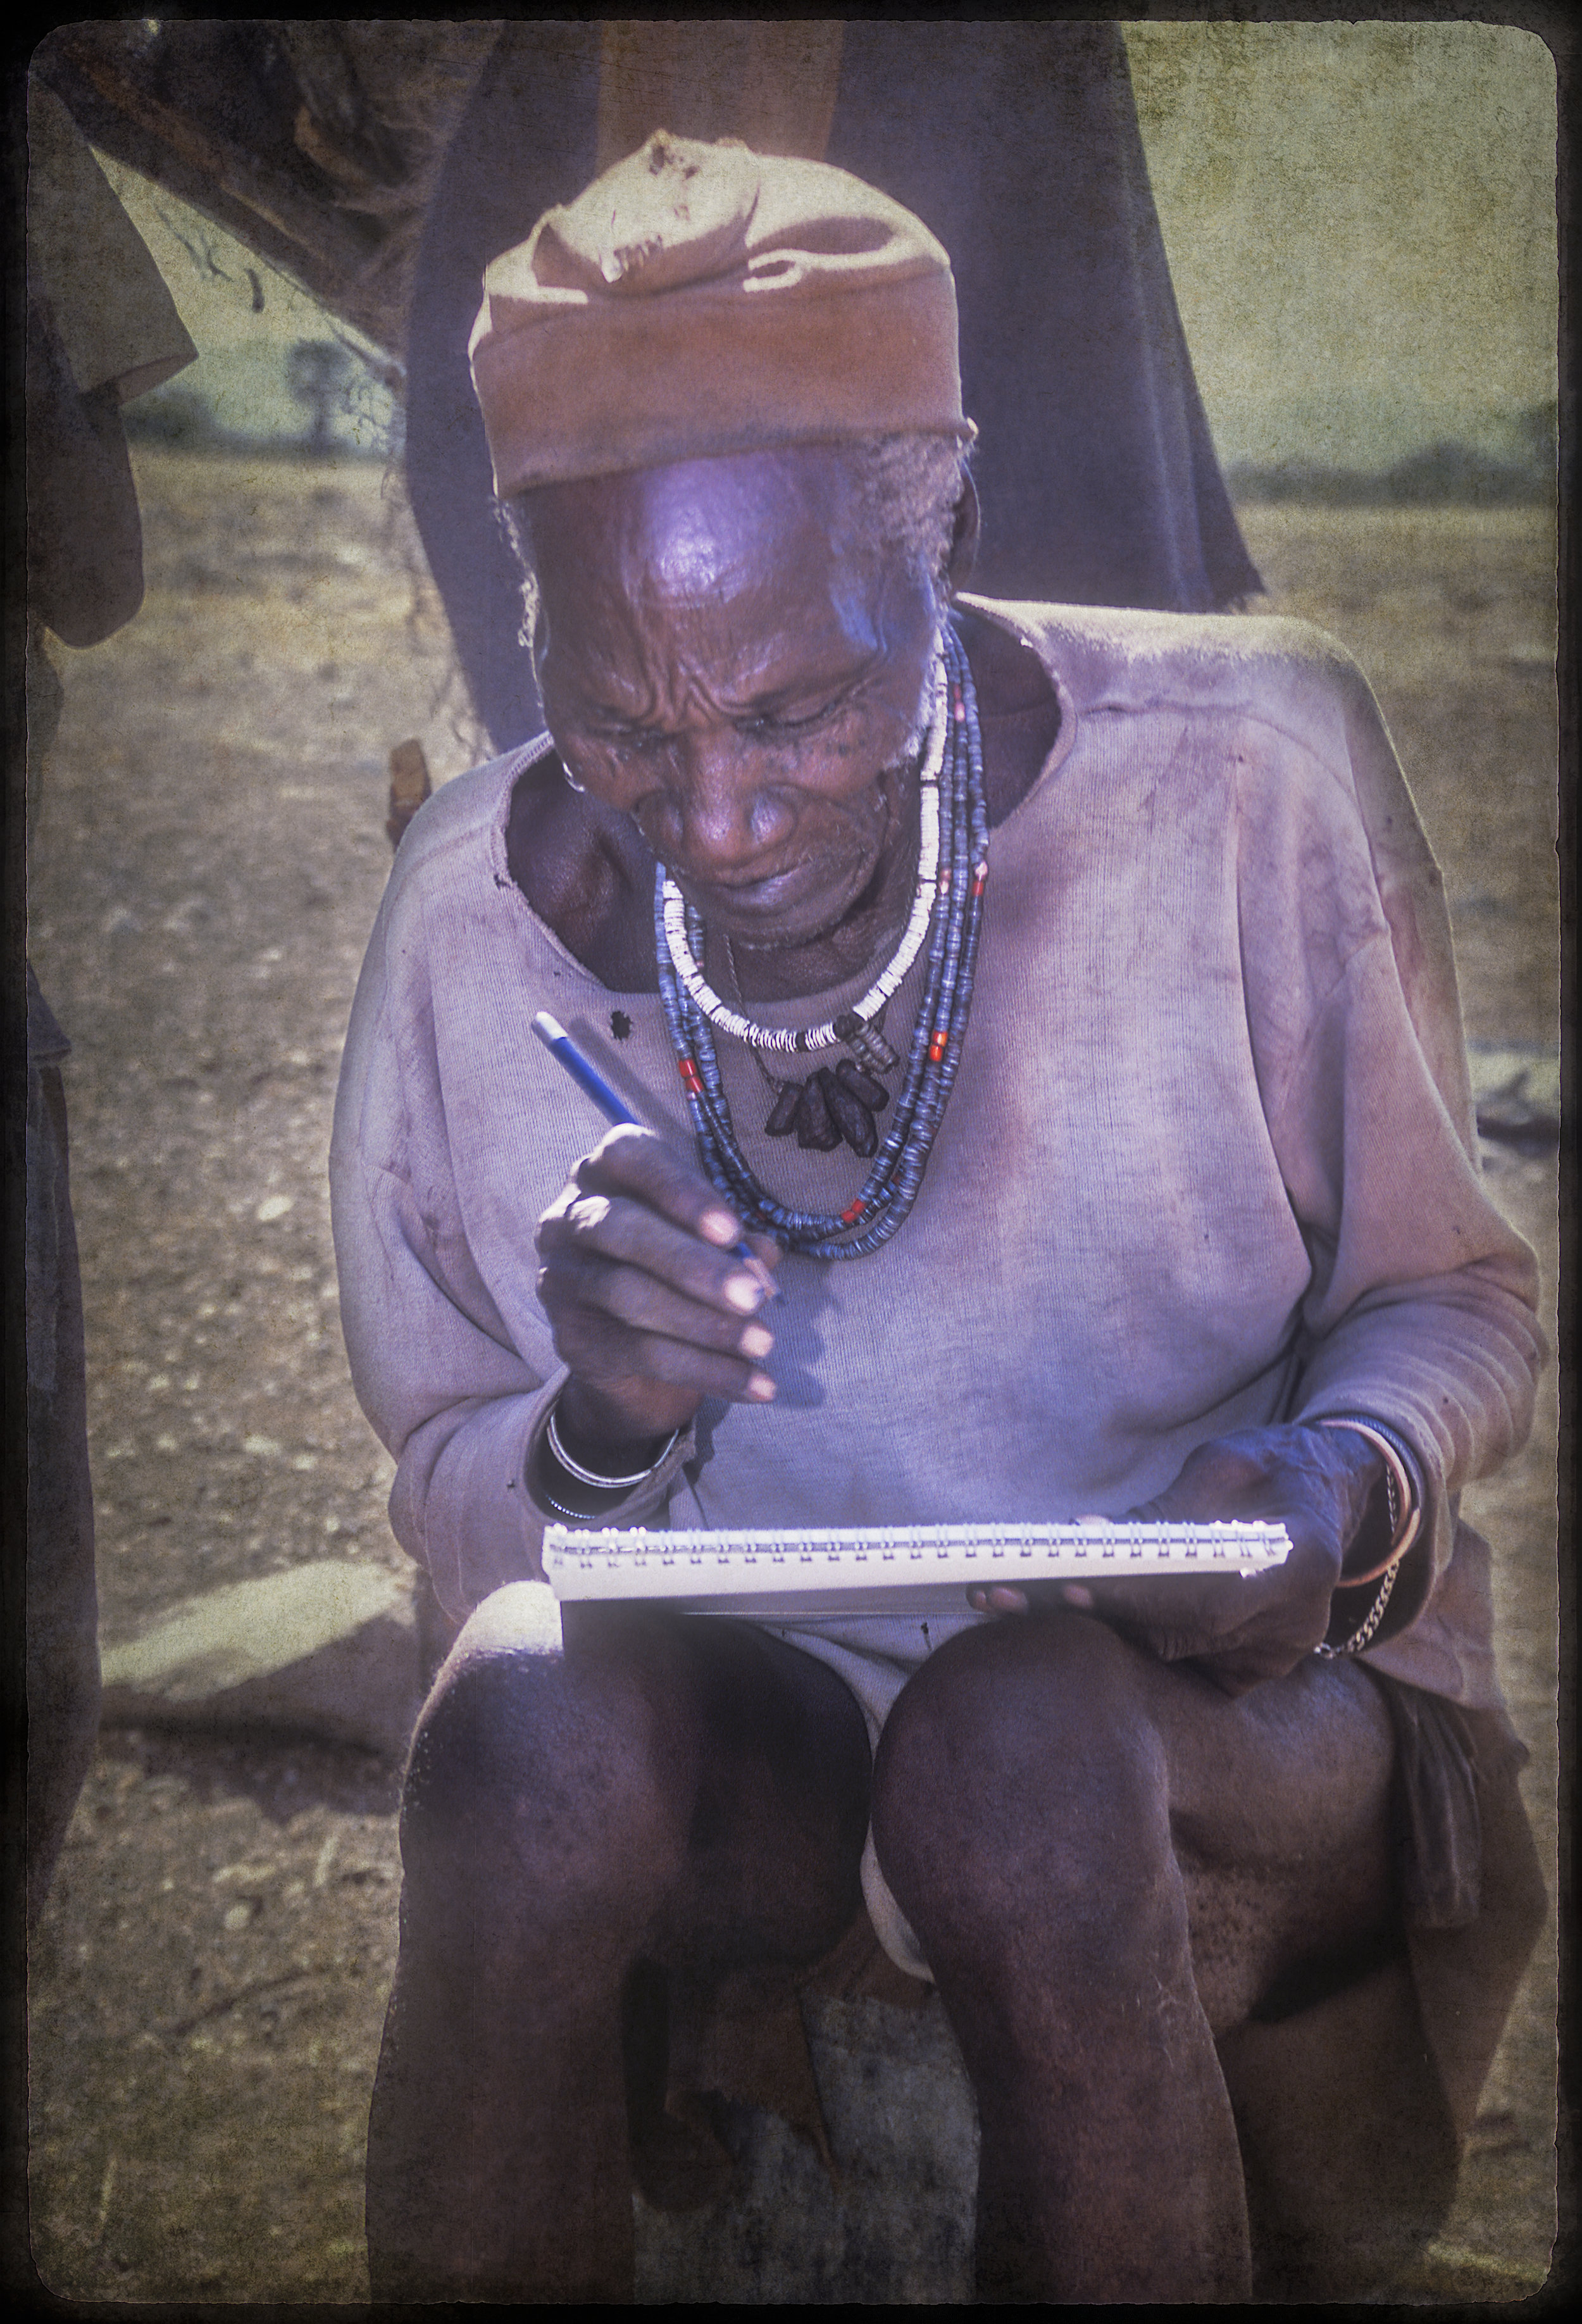 Himba medicine man draws his vision during trance